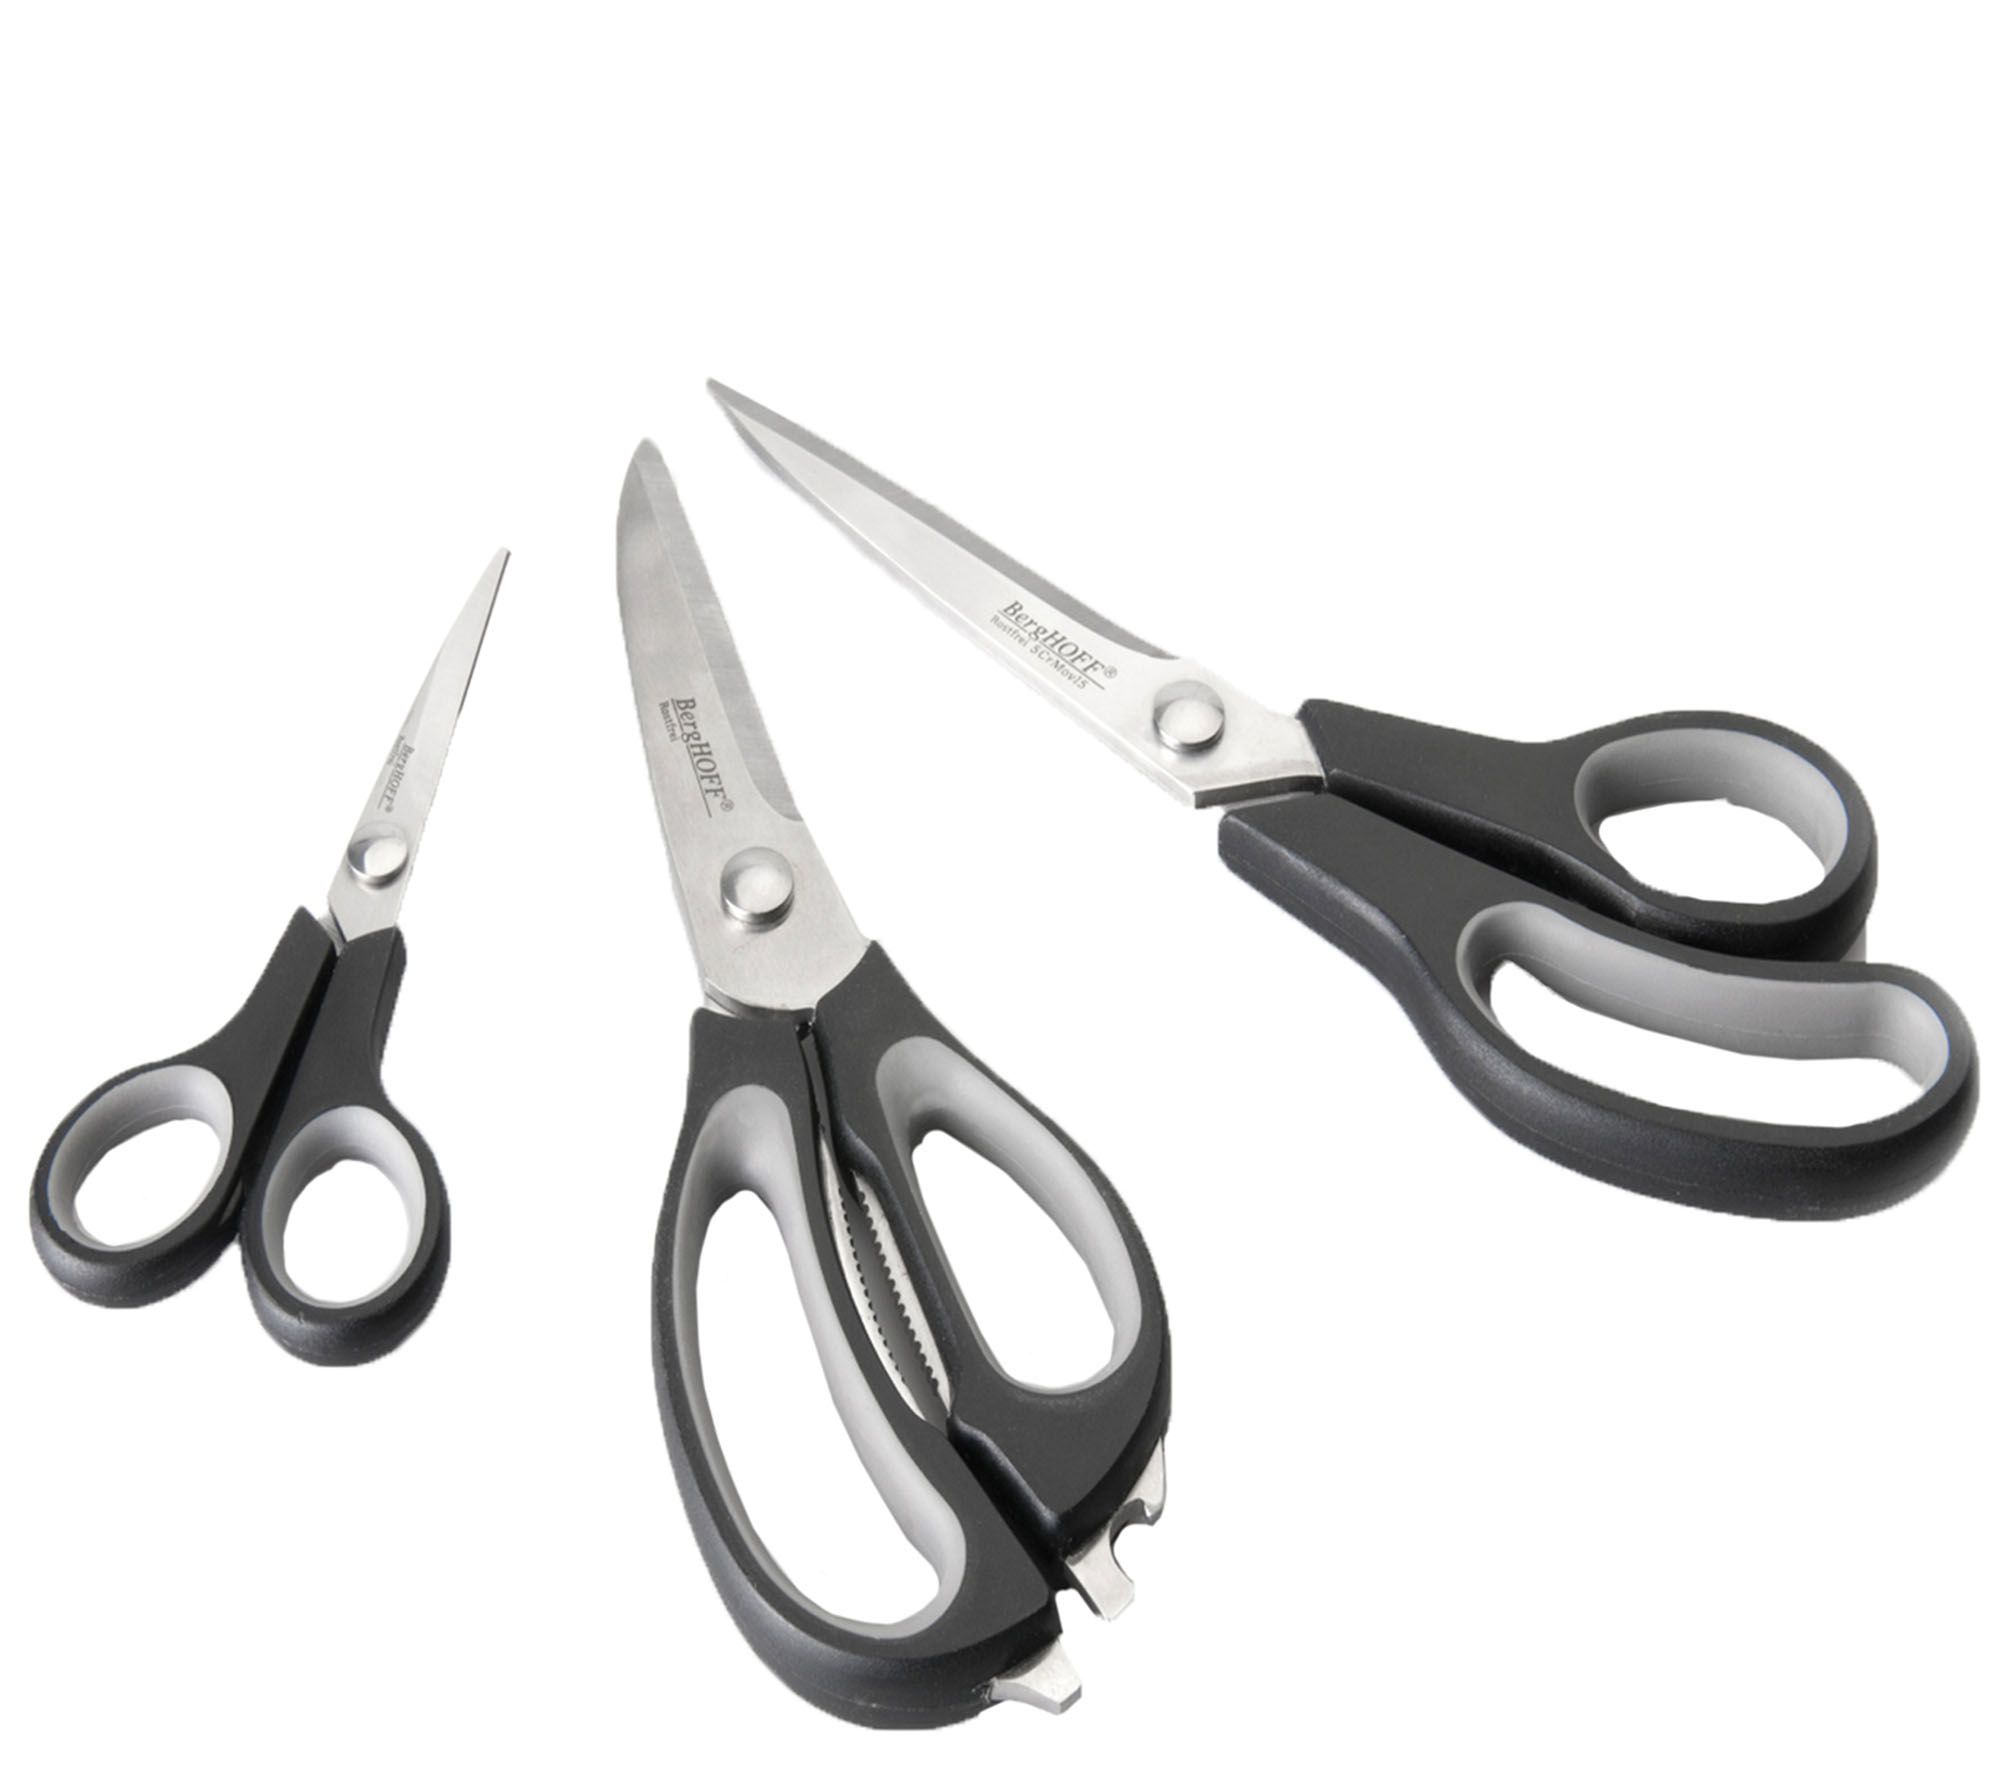 Kuhn Rikon Ultimate Snips Set of 2 Multi Purpose Scissor Shears - QVC UK